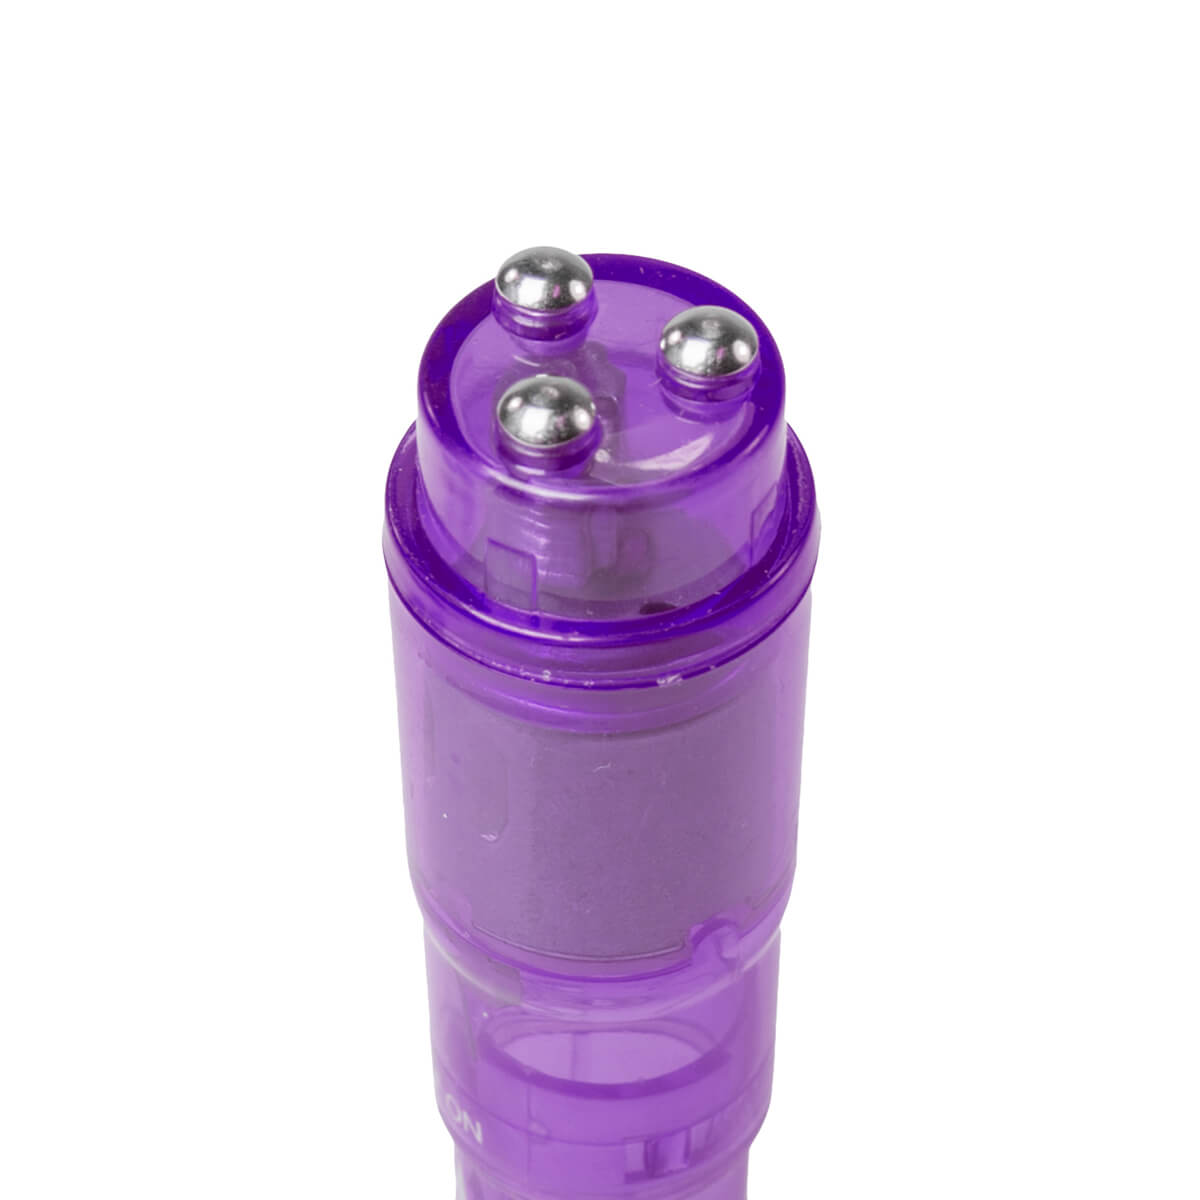 Easytoys Pocket Rocket - vibrátoros szett - lila (5 részes) Mini vibrátor (rezgő) kép